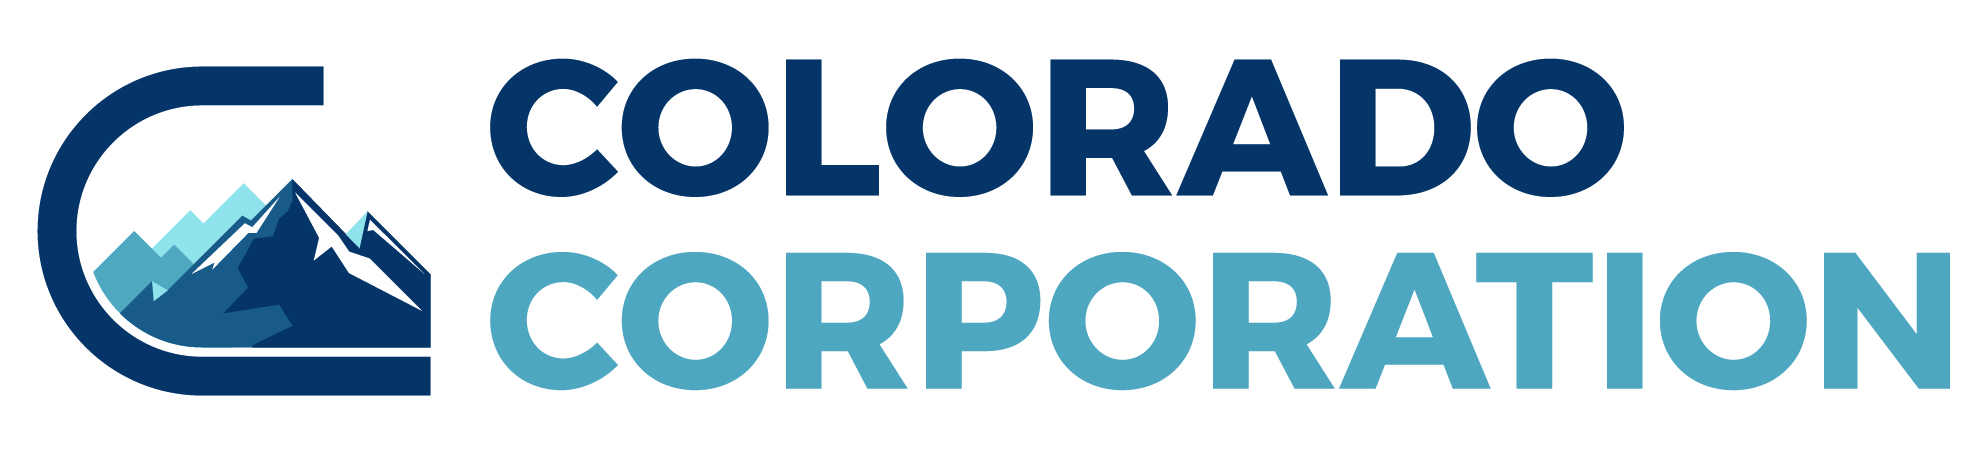 Colorado Corporation logo